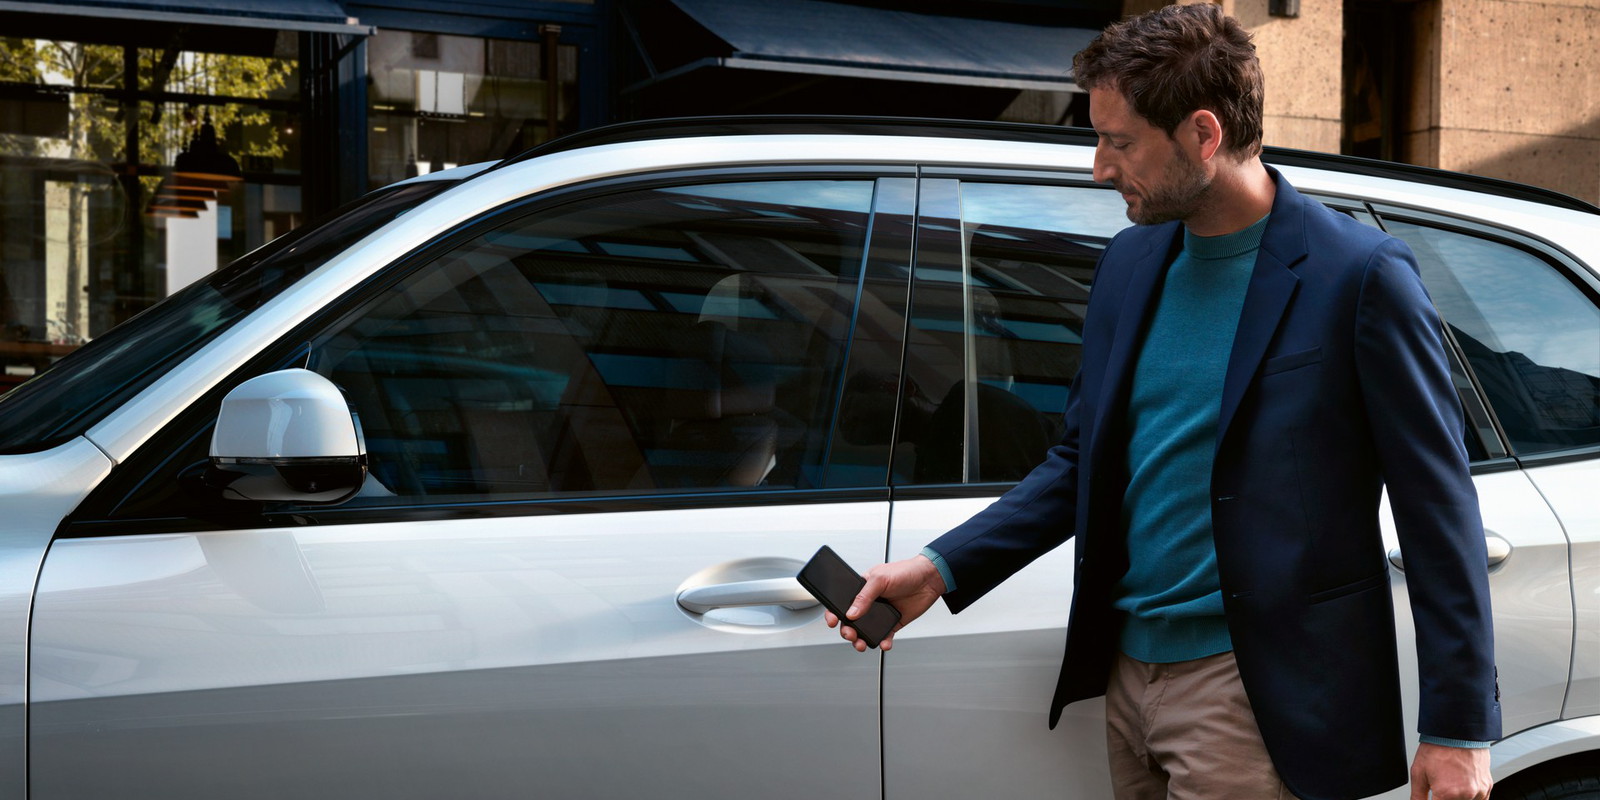 Τα κινητά της Apple γίνονται κλειδί για το αυτοκίνητό σας!